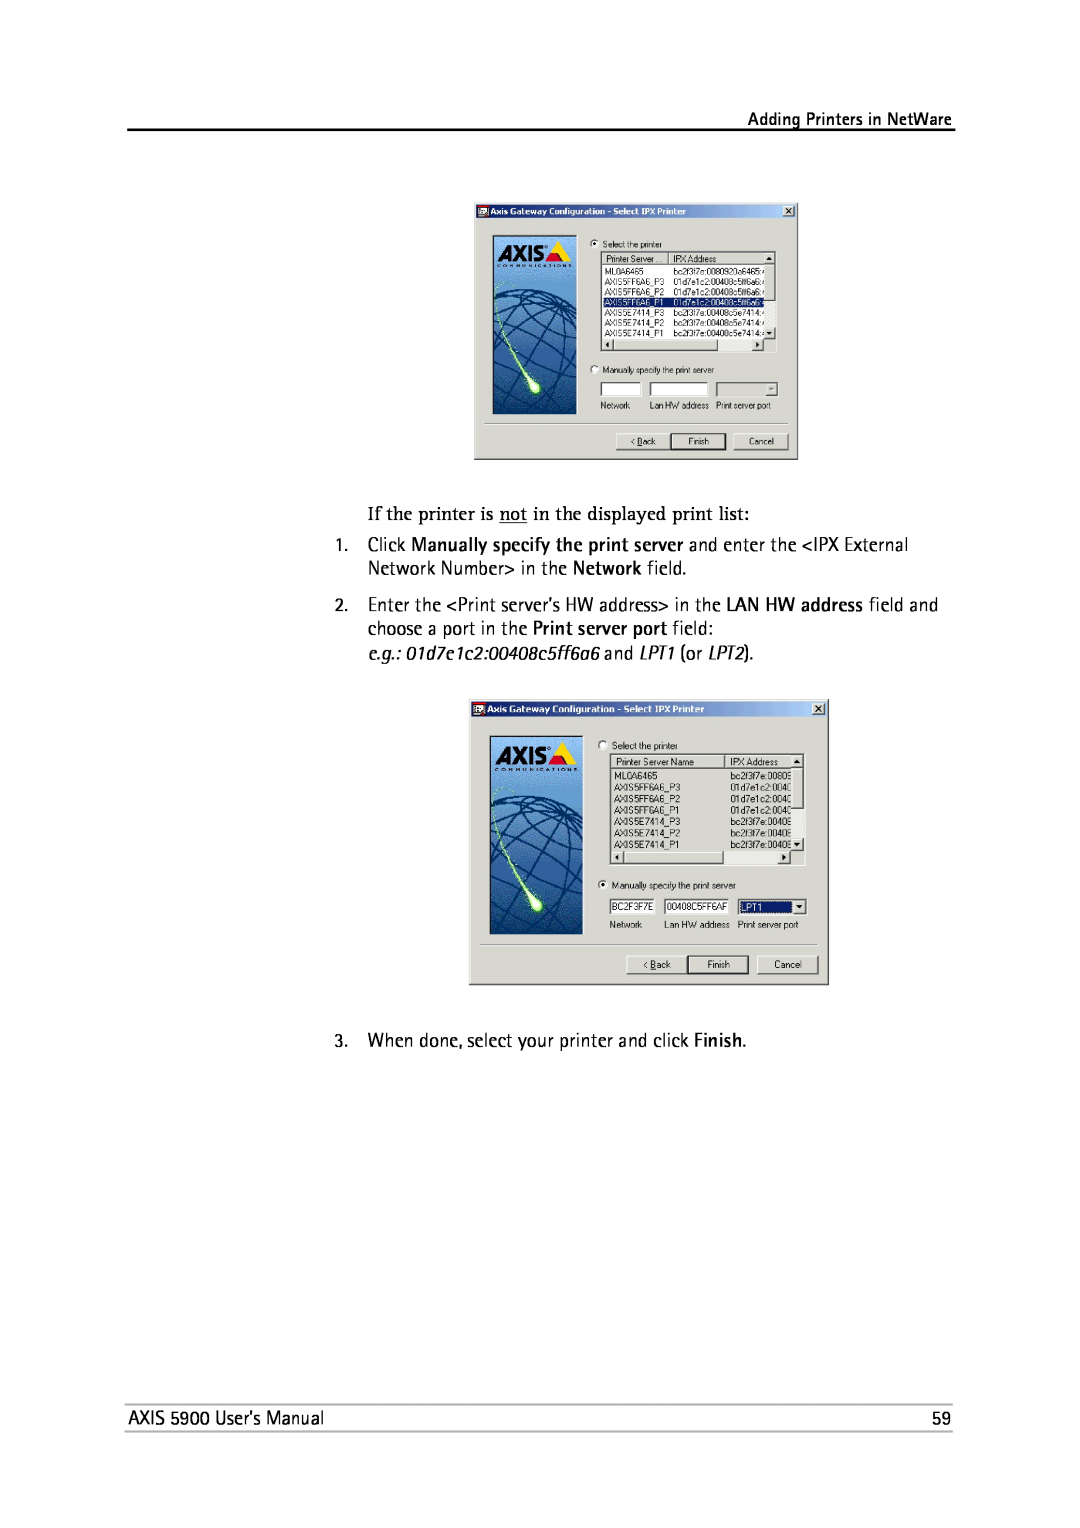 Philips 5900 user manual e.g. 01d7e1c200408c5ff6a6 and LPT1 or LPT2 